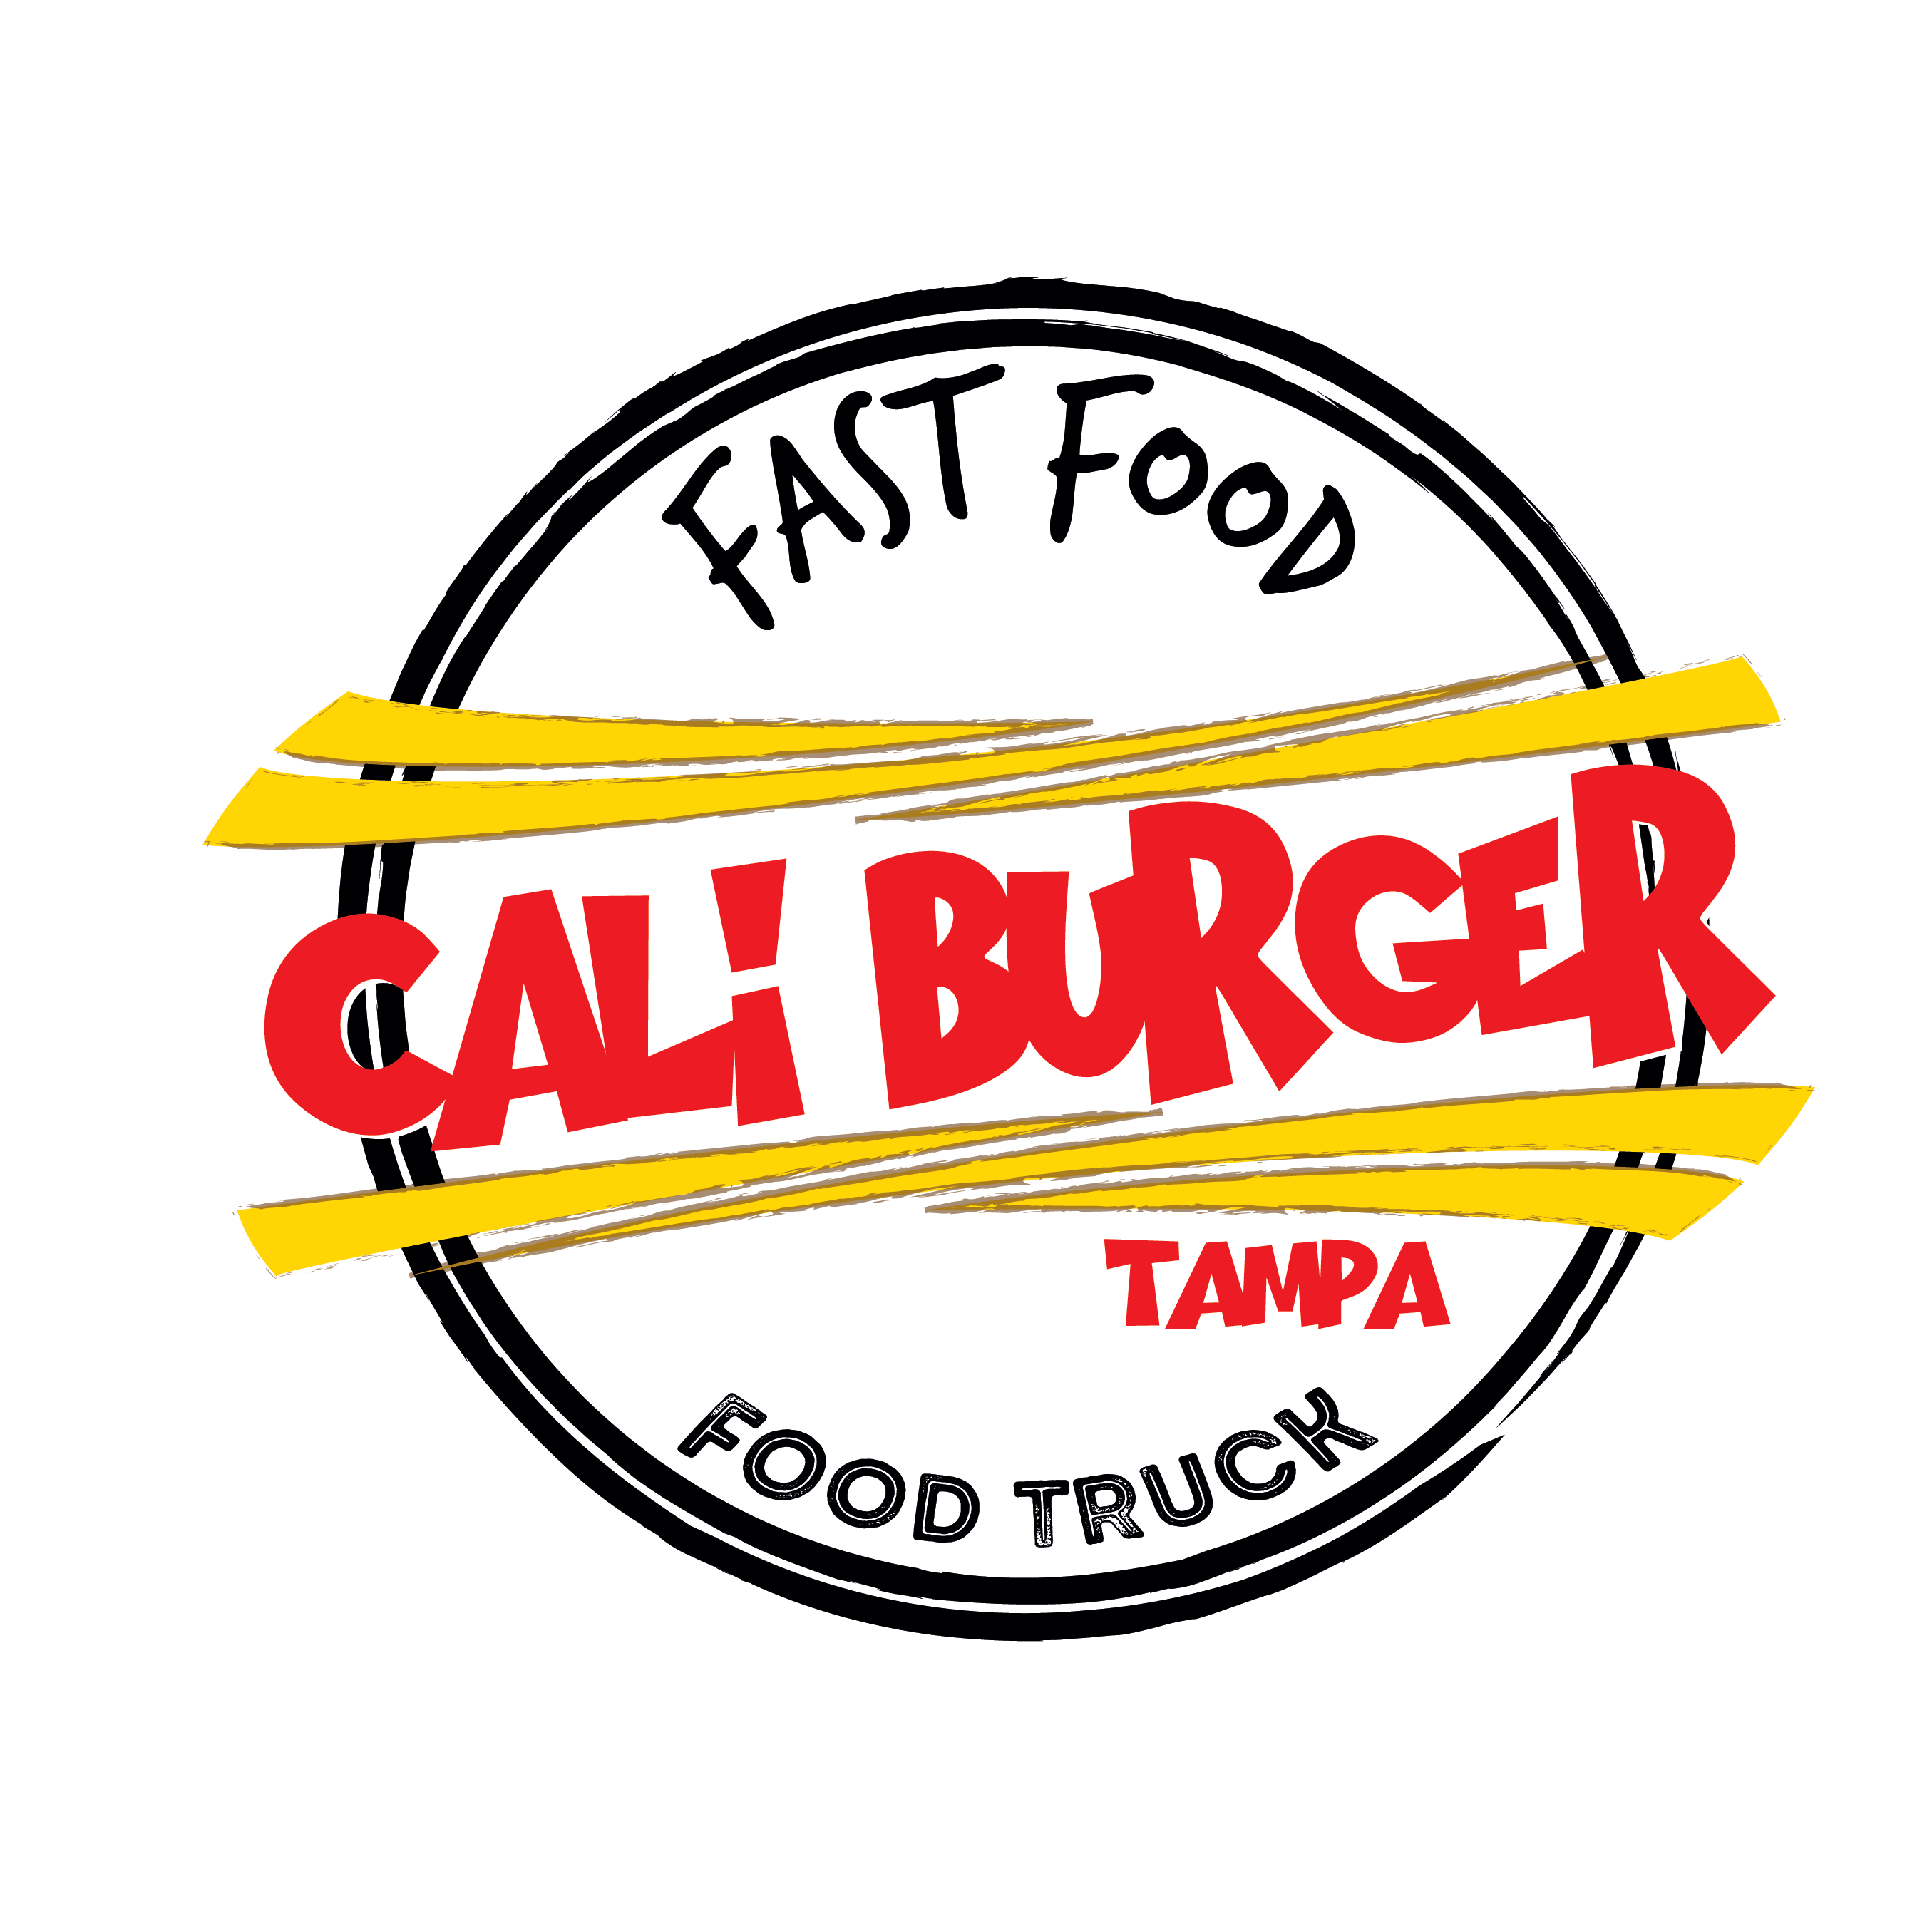 Caliburger Tampa logo